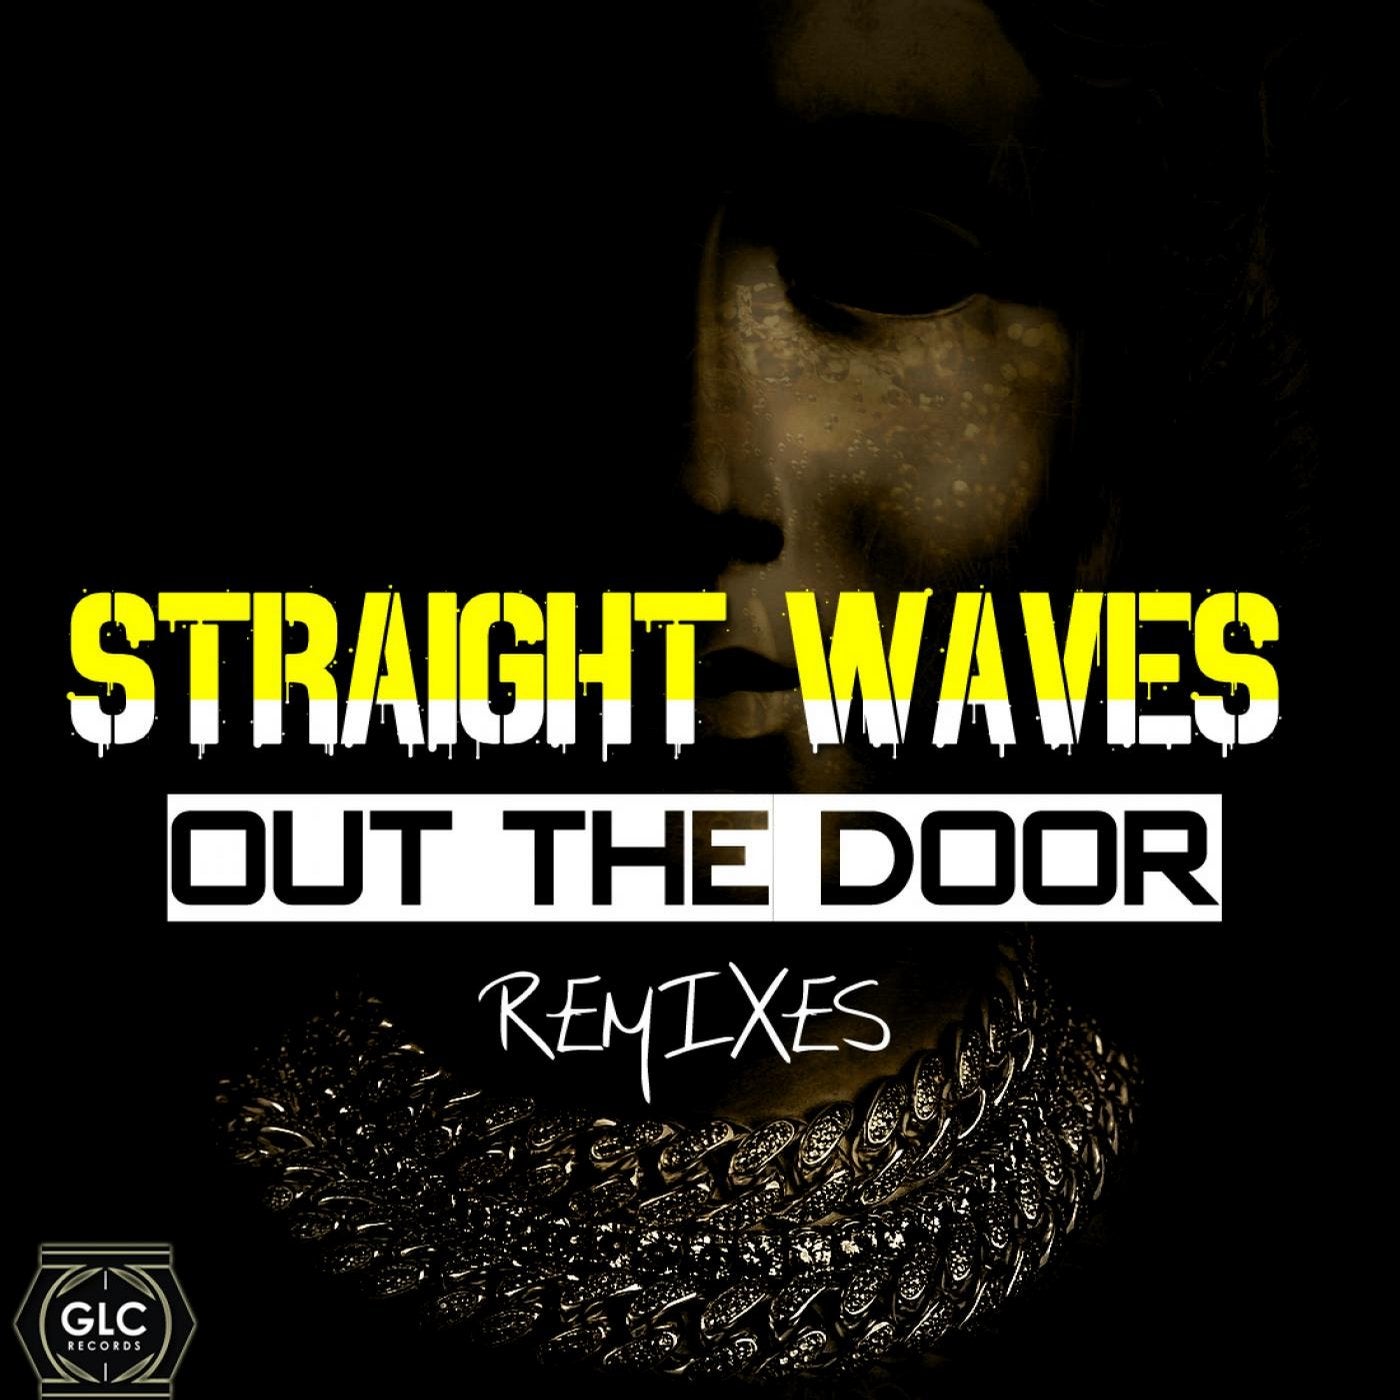 Out The Door Remixes